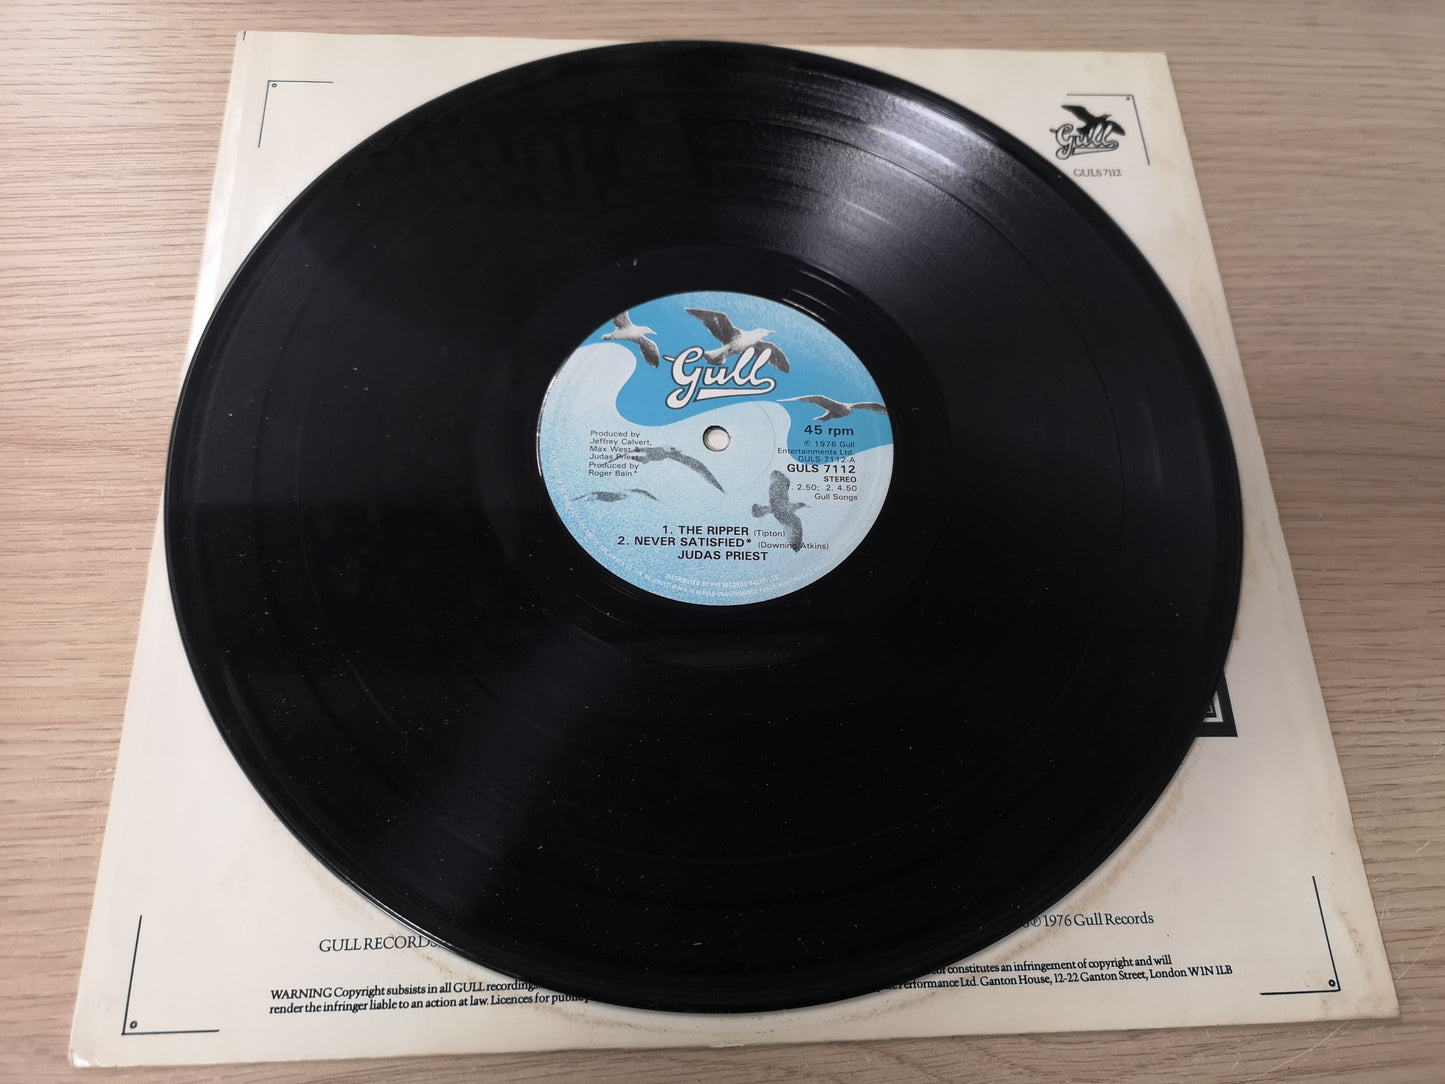 Judas Priest "The Ripper" Orig UK 1981 EX/EX (12" Maxi EP)